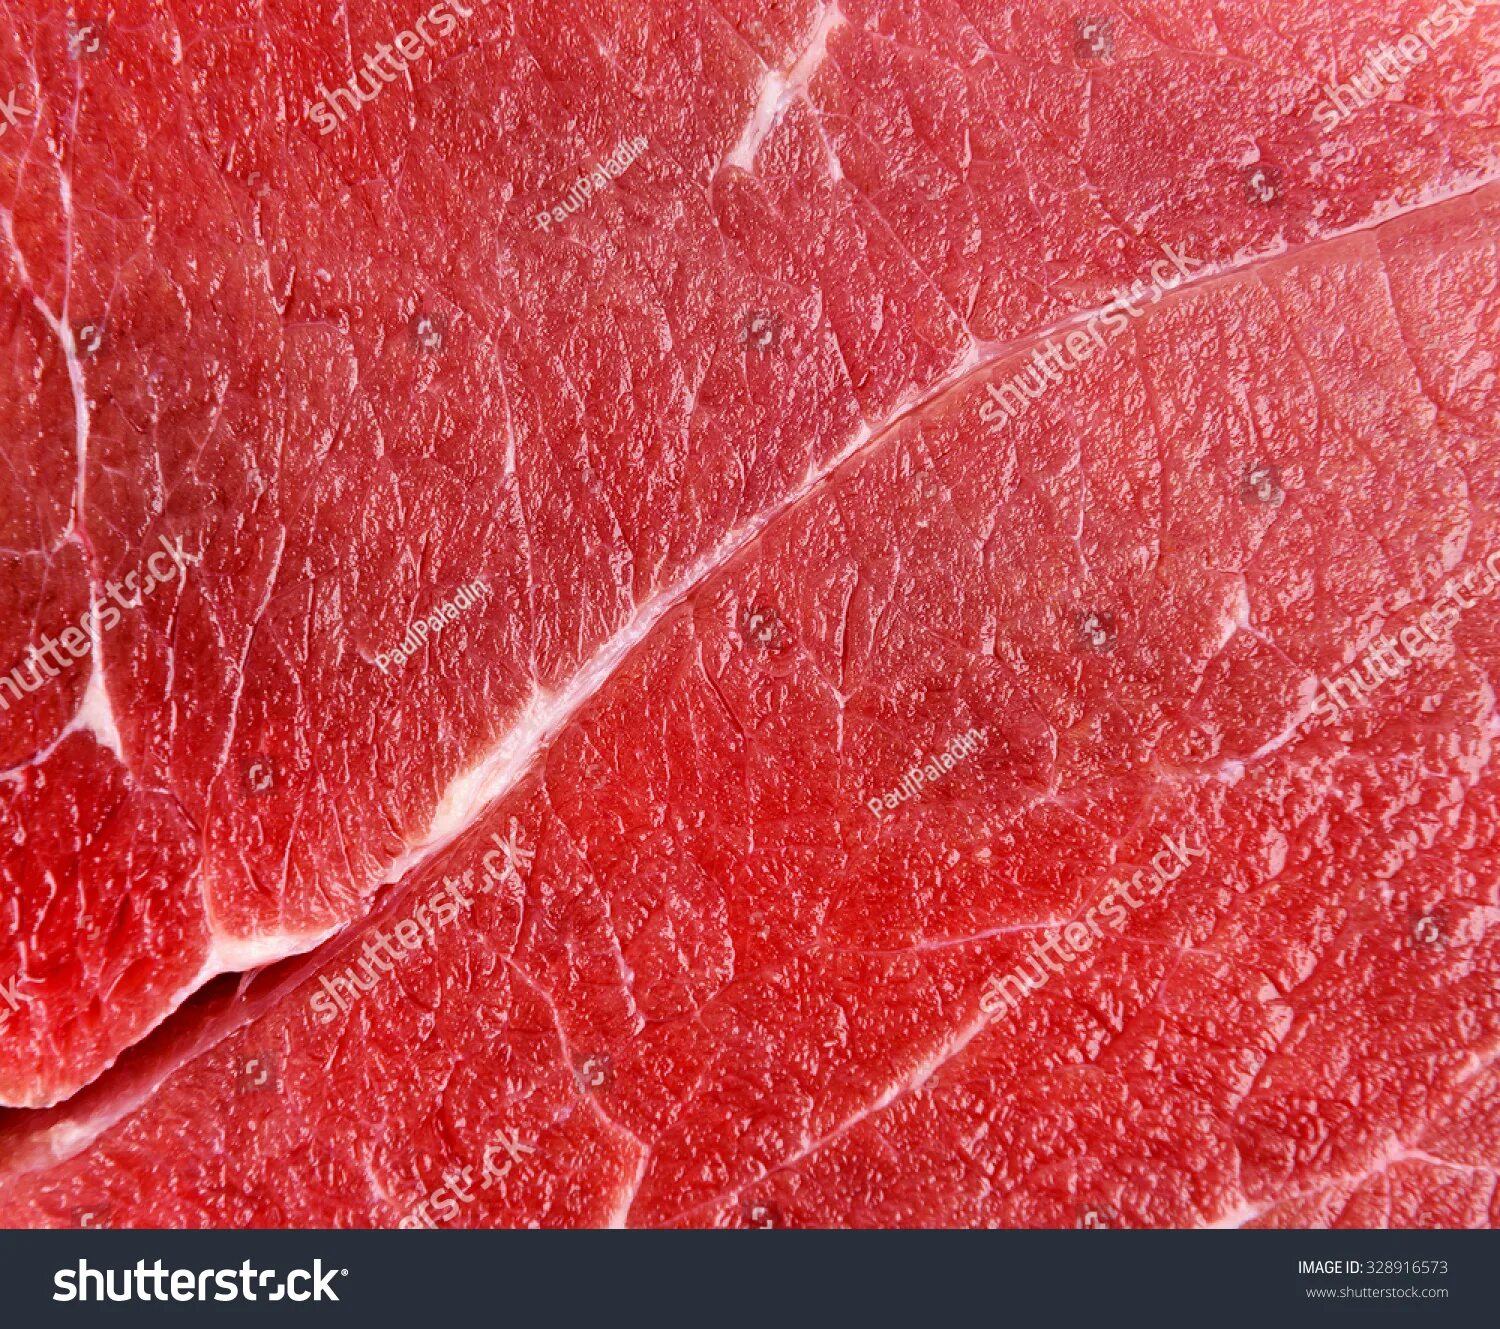 Мясо без крови видеть во. Говядина текстура.